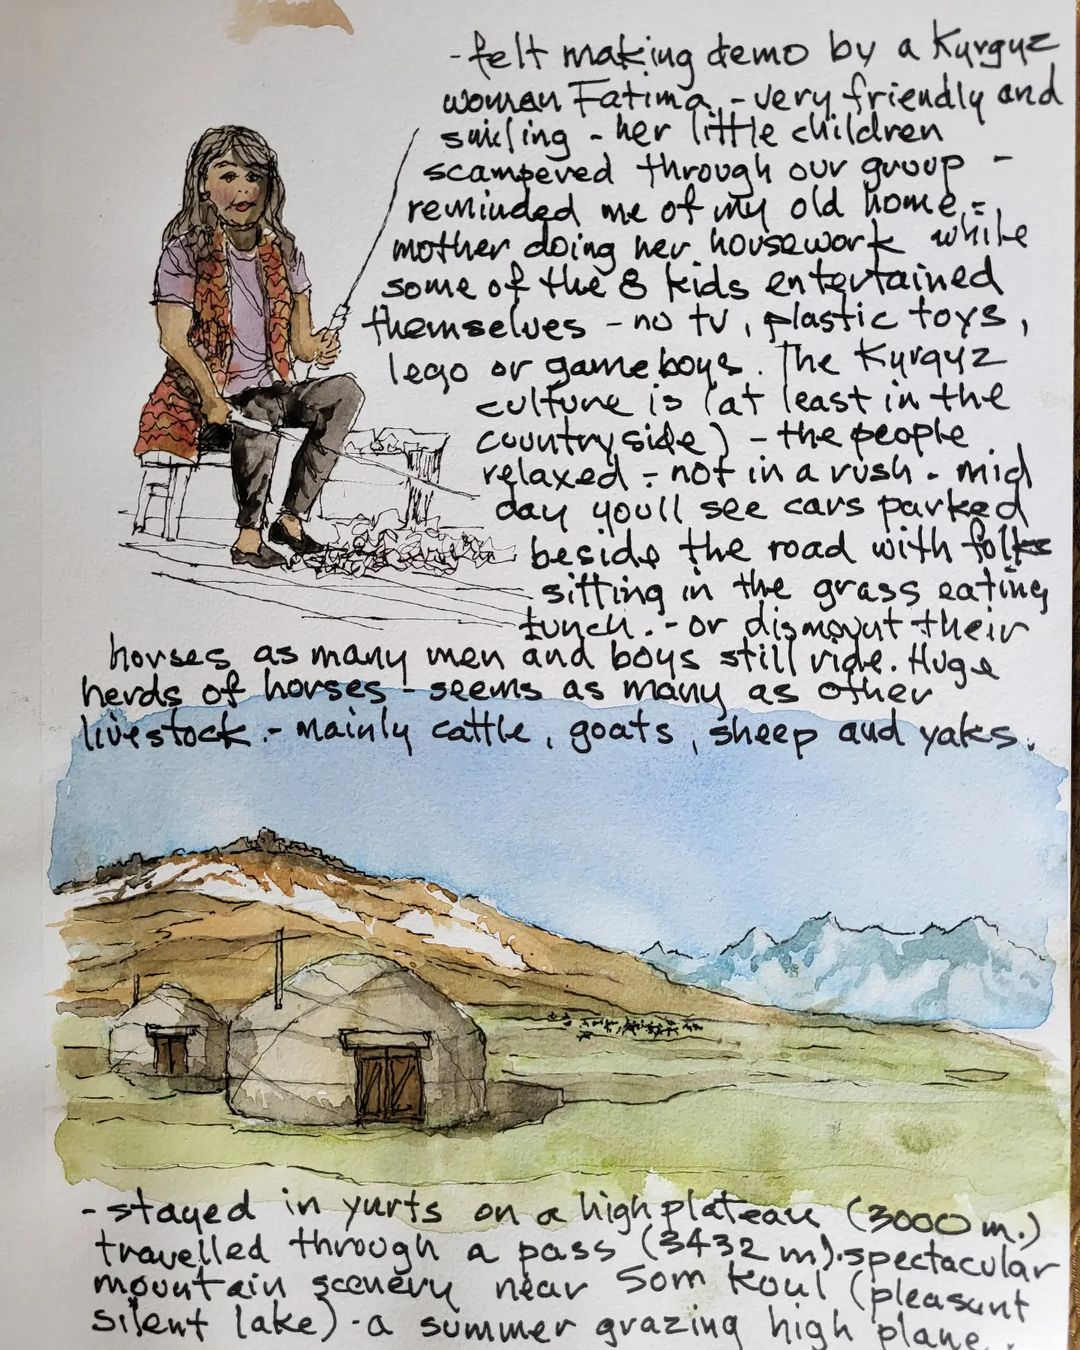 Felt Making, Yurts — Son Kul, Kyrgyzstan — Karl Willms